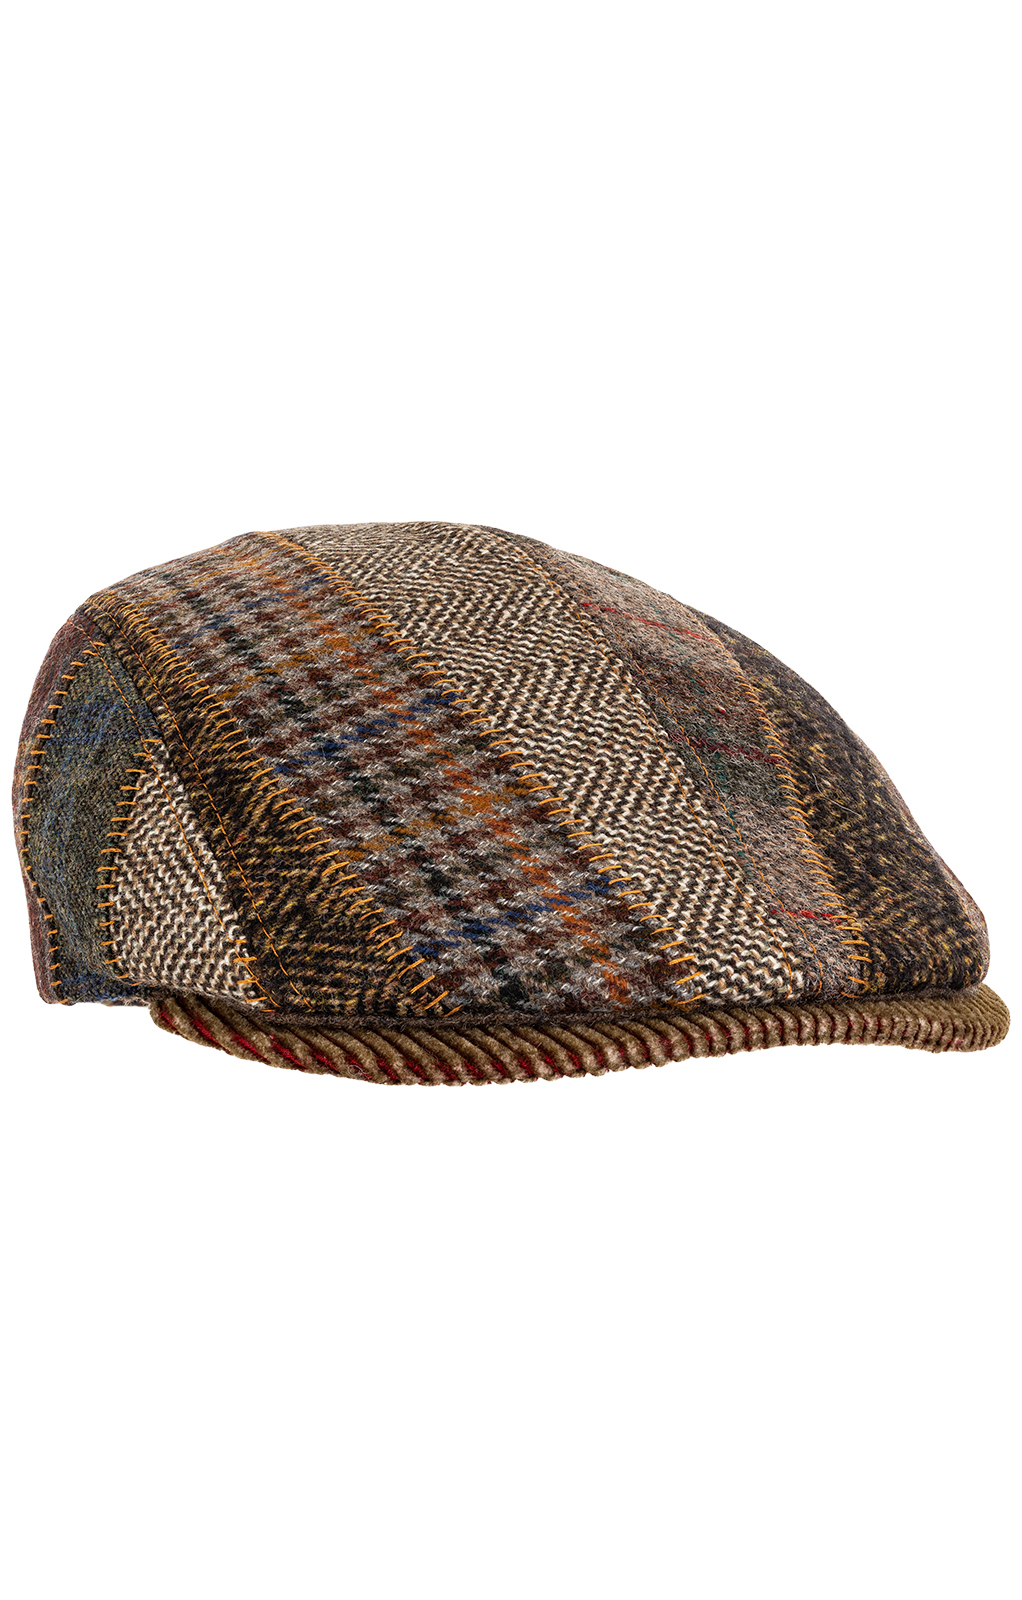 Trachten Hats 54001 patch brown von Faustmann